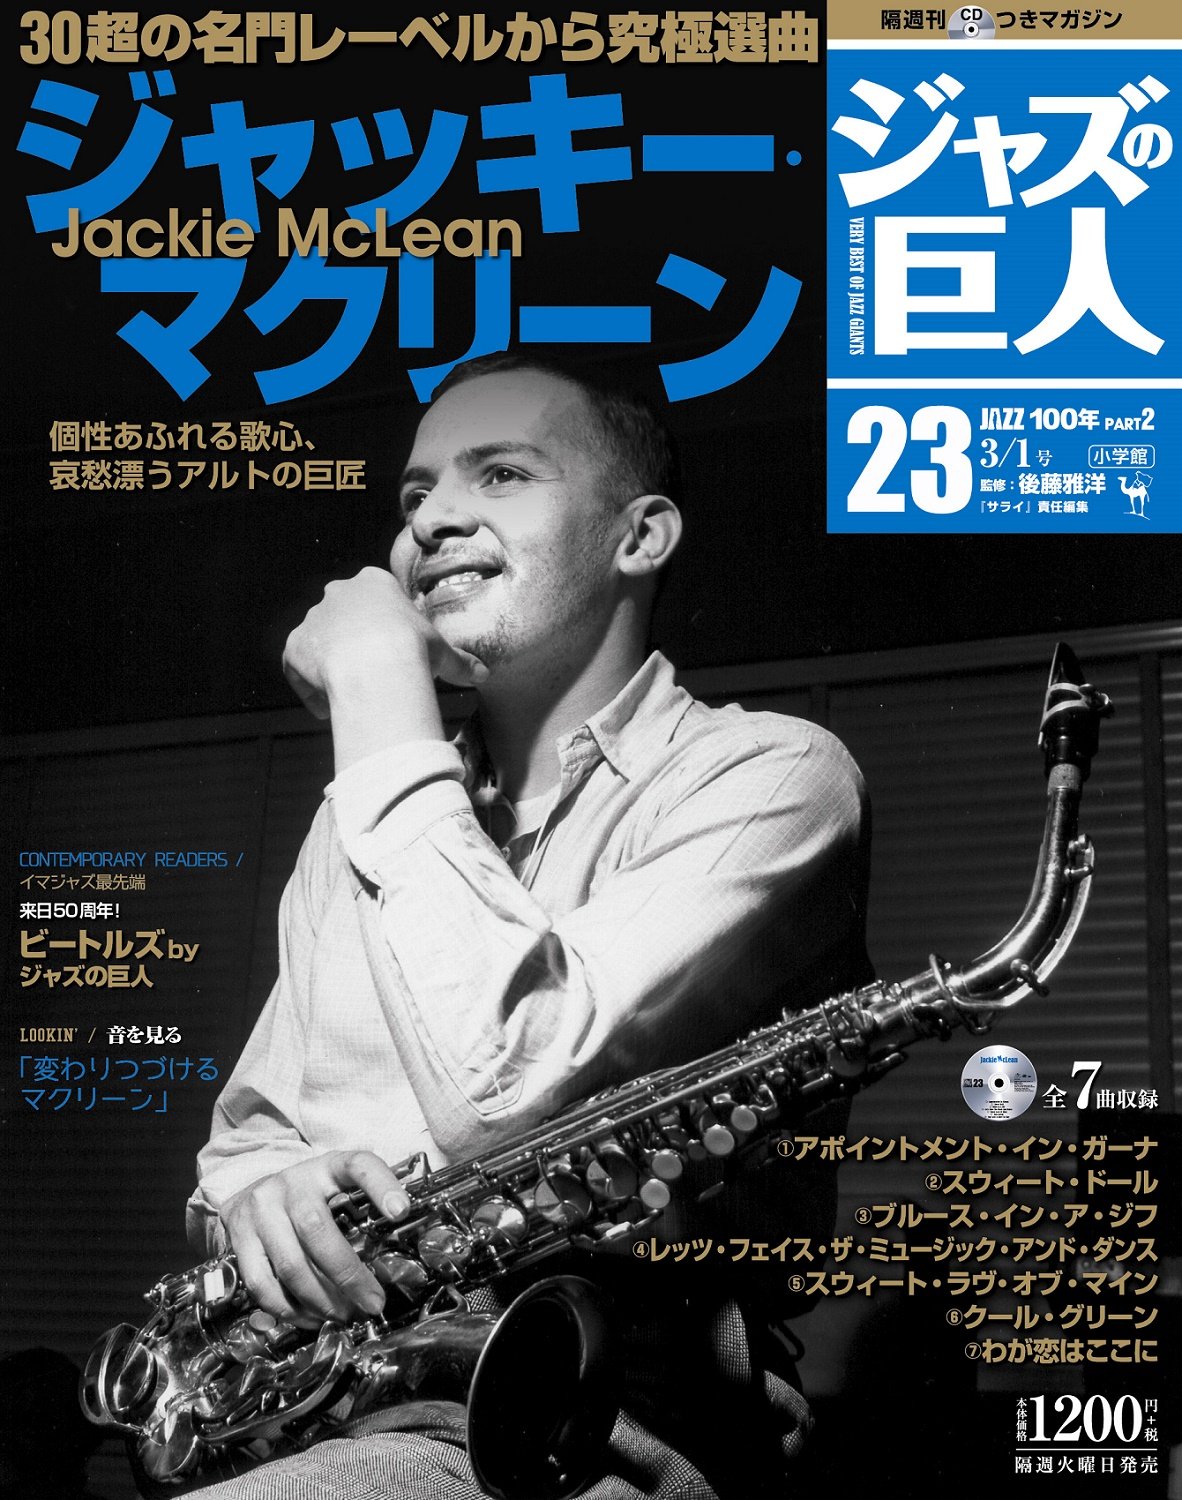 エリック ドルフィー 伝統的なジャズの文脈に連なりながら前衛的個性を表現 ジャズの巨人 第19巻より サライ Jp 小学館の雑誌 サライ 公式サイト